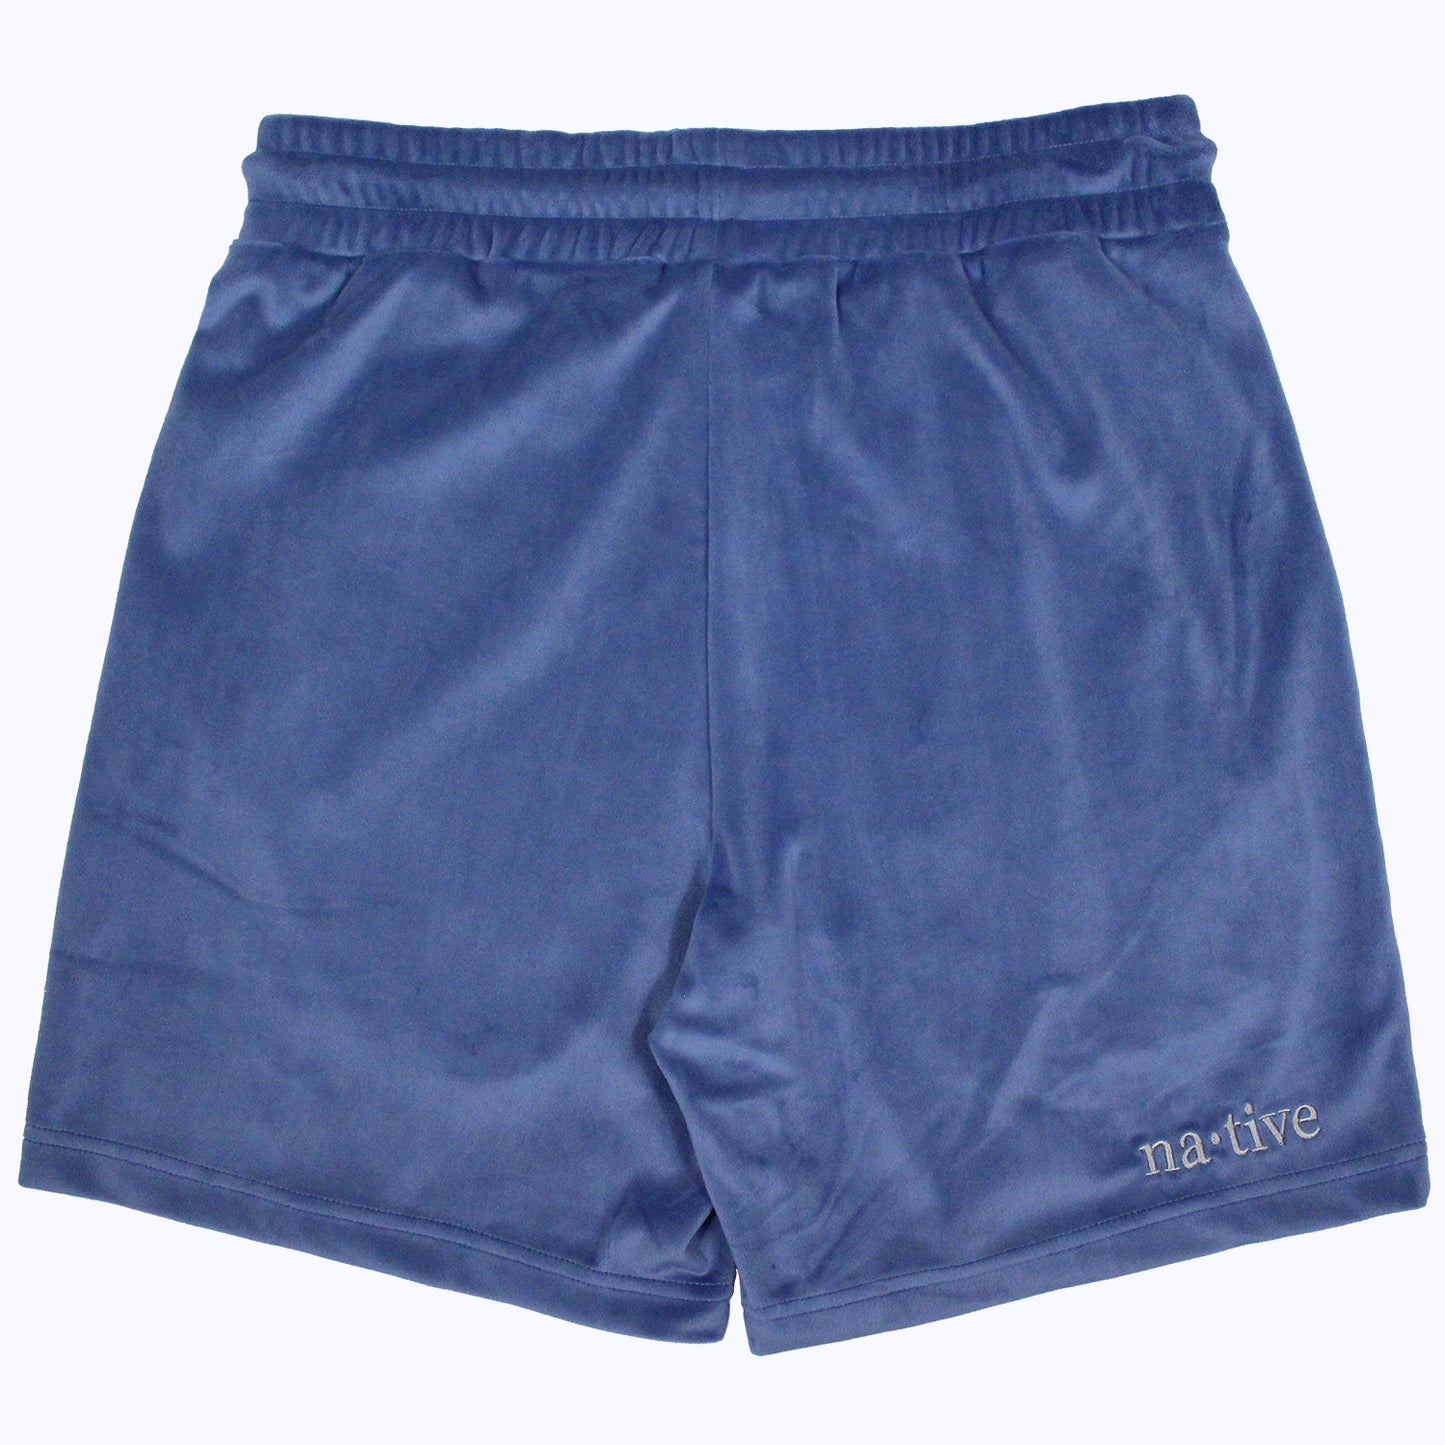 velour shorts in slate blue